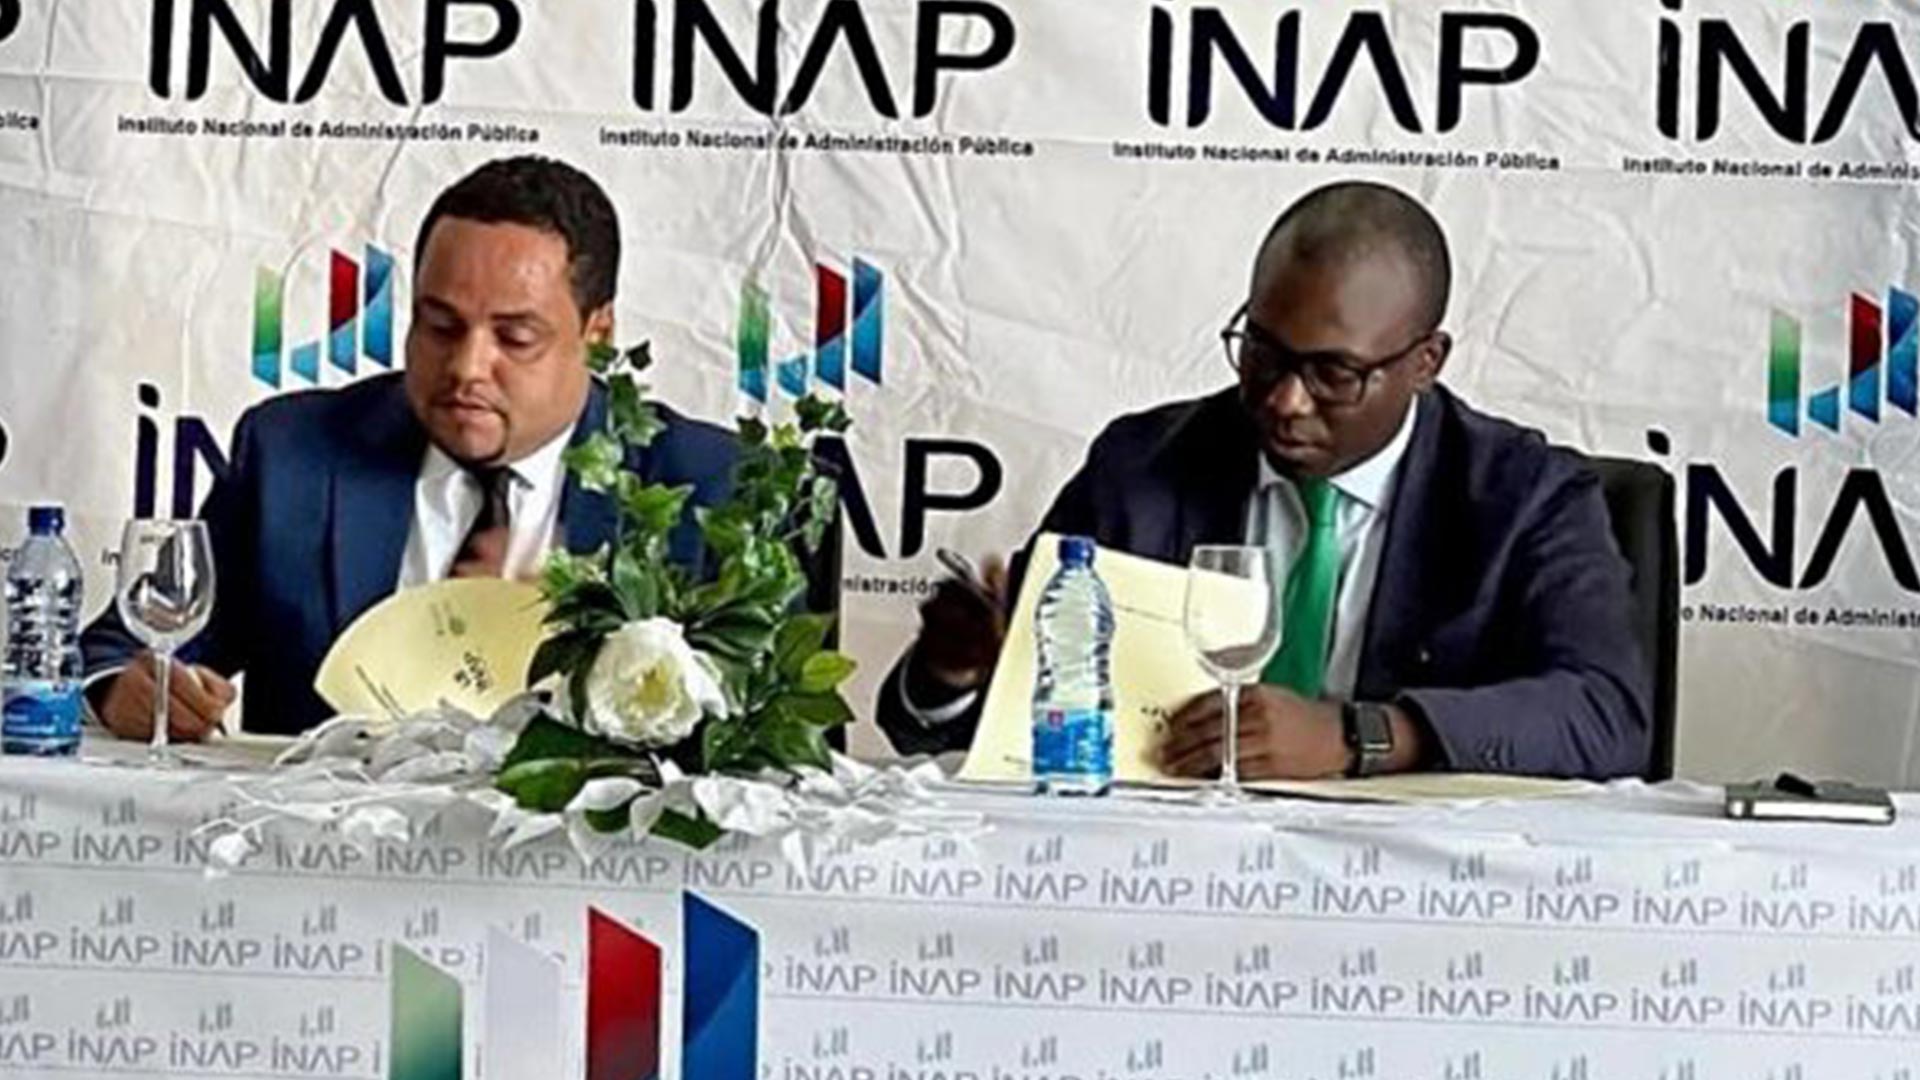 El INAP firma un convenio de colaboración con BANGE Business School para reforzar las capacidades del cuerpo funcionarial de la Administración Pública